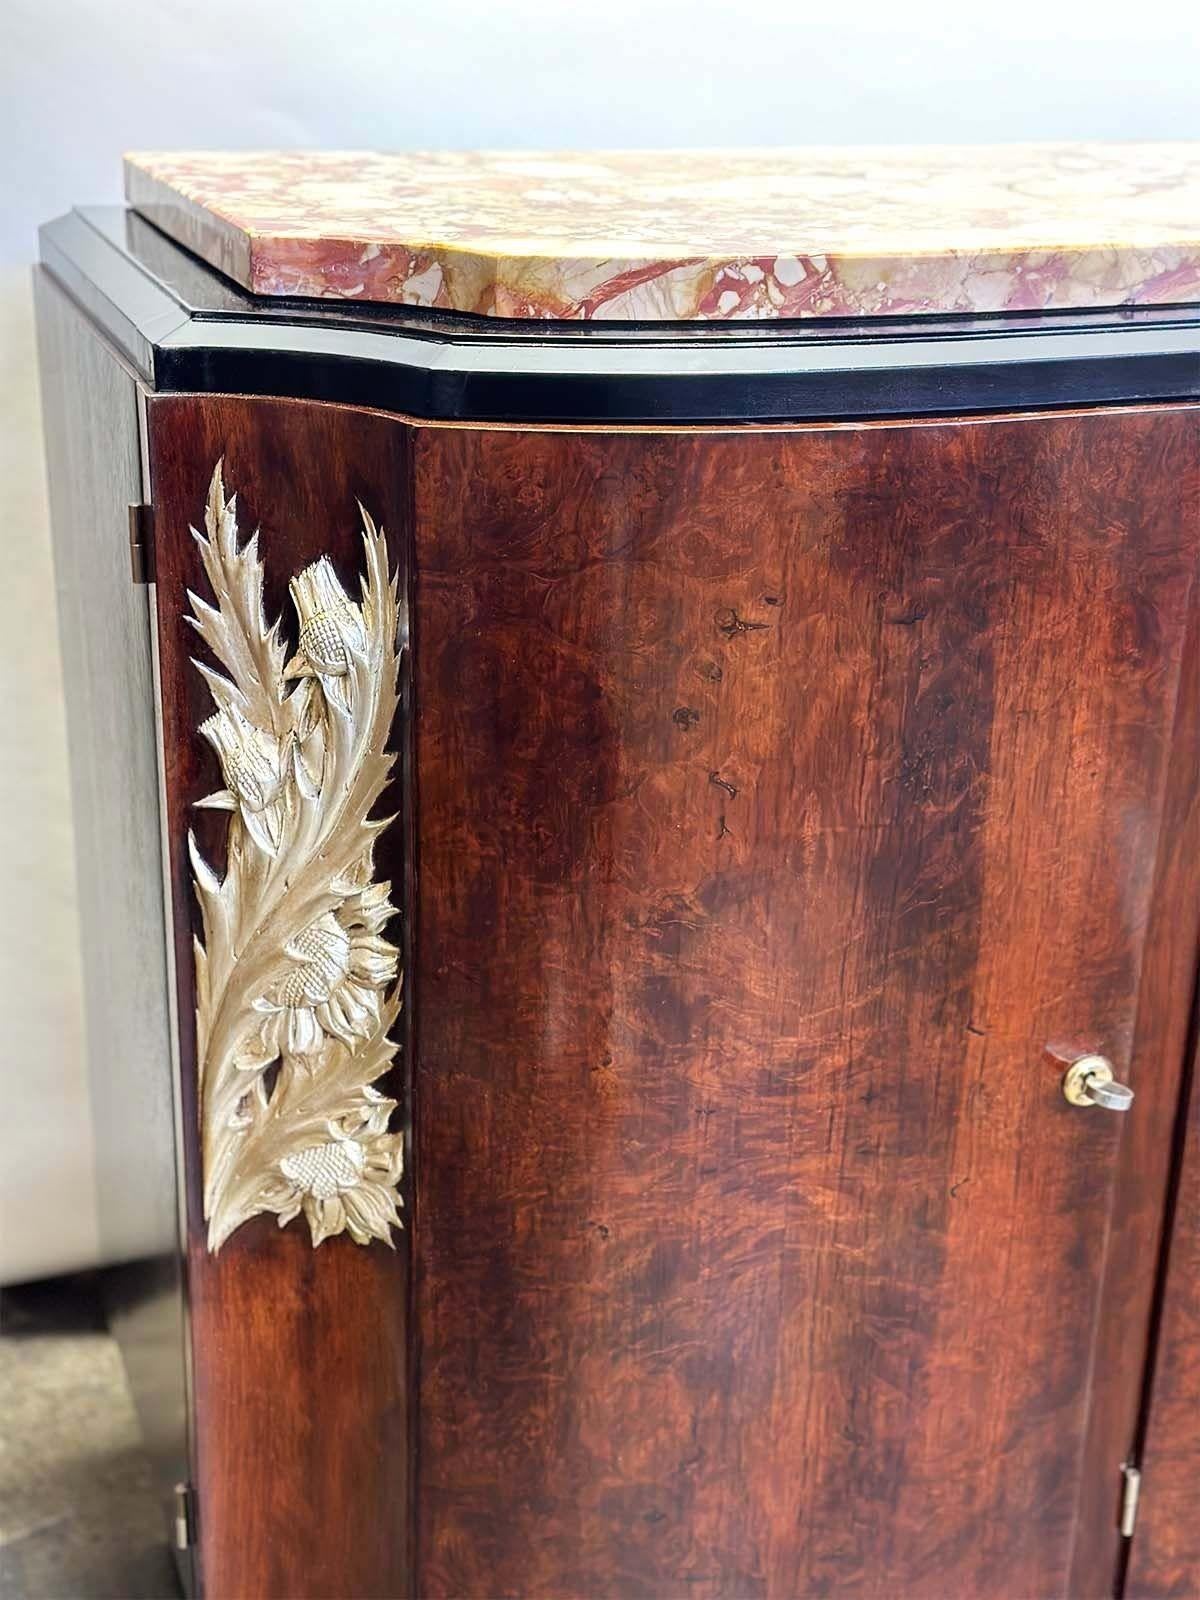 La crédence française en bois Art déco des années 1920 est un meuble exquis qui incarne l'élégance et la sophistication du mouvement Art déco. Il se caractérise par un design épuré, alliant matériaux luxueux et sculptures botaniques. La crédence est